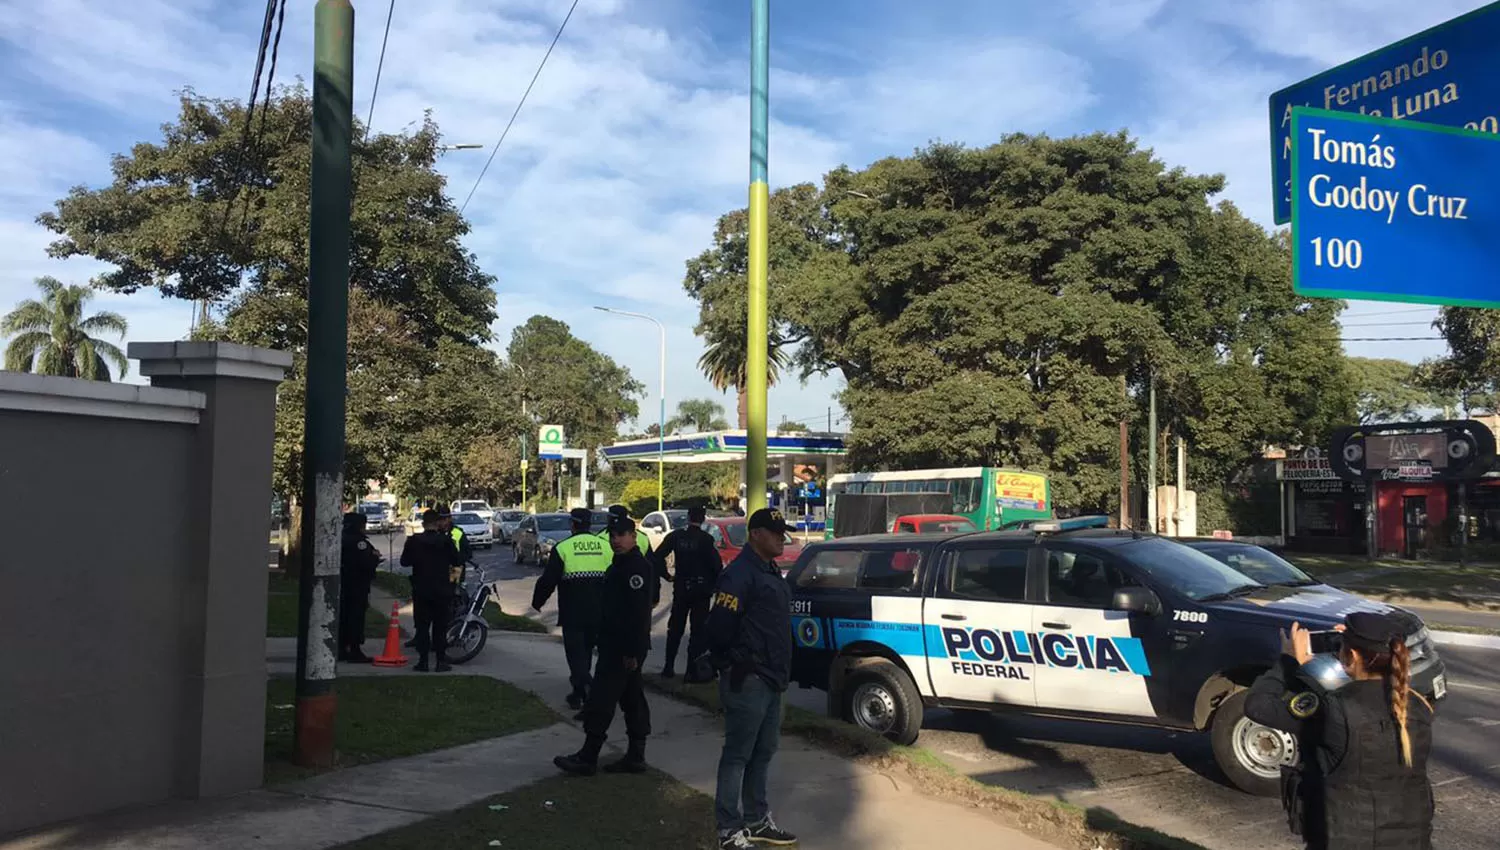 La Policía realiza controles preventivos, en el marco del programa Tucumán activa